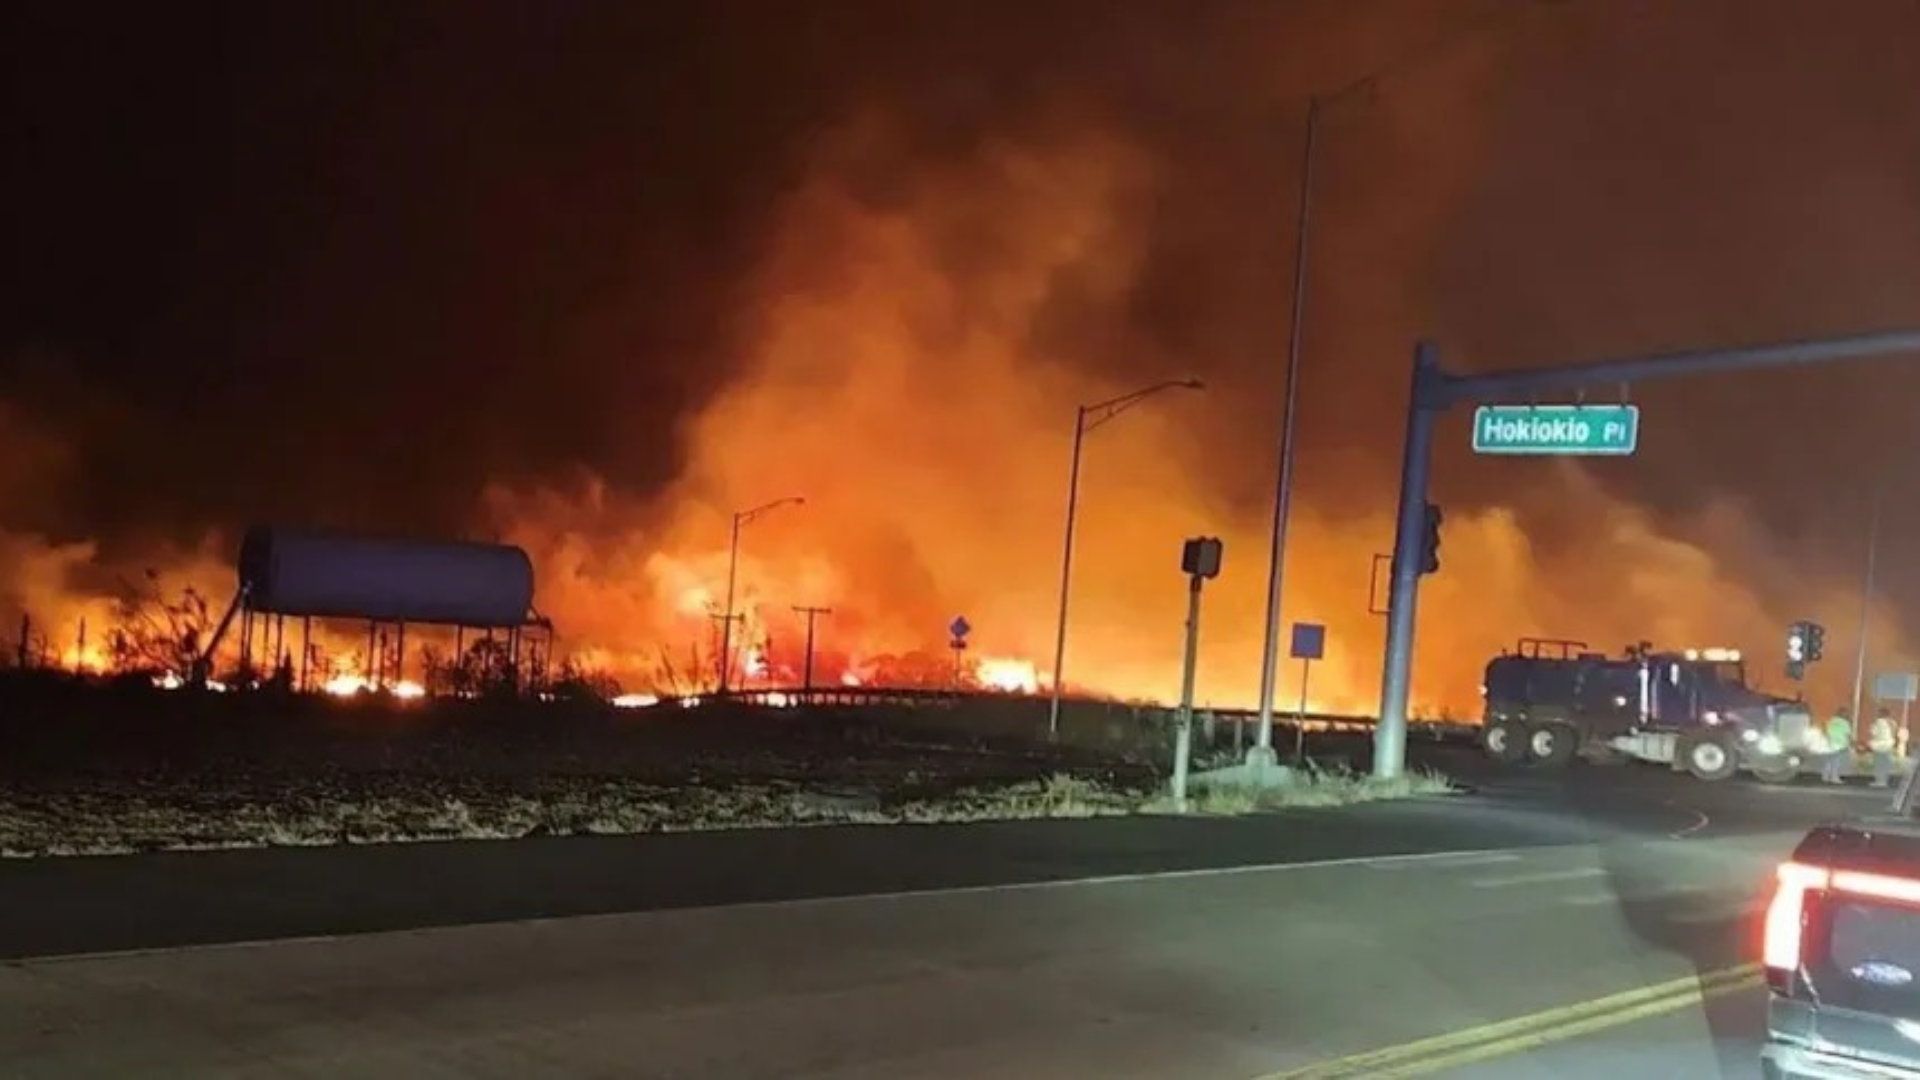 Brasileiro detalha momentos de terror e poucos minutos para escapar de incêndio no Havaí: “Fumaça tomou conta”